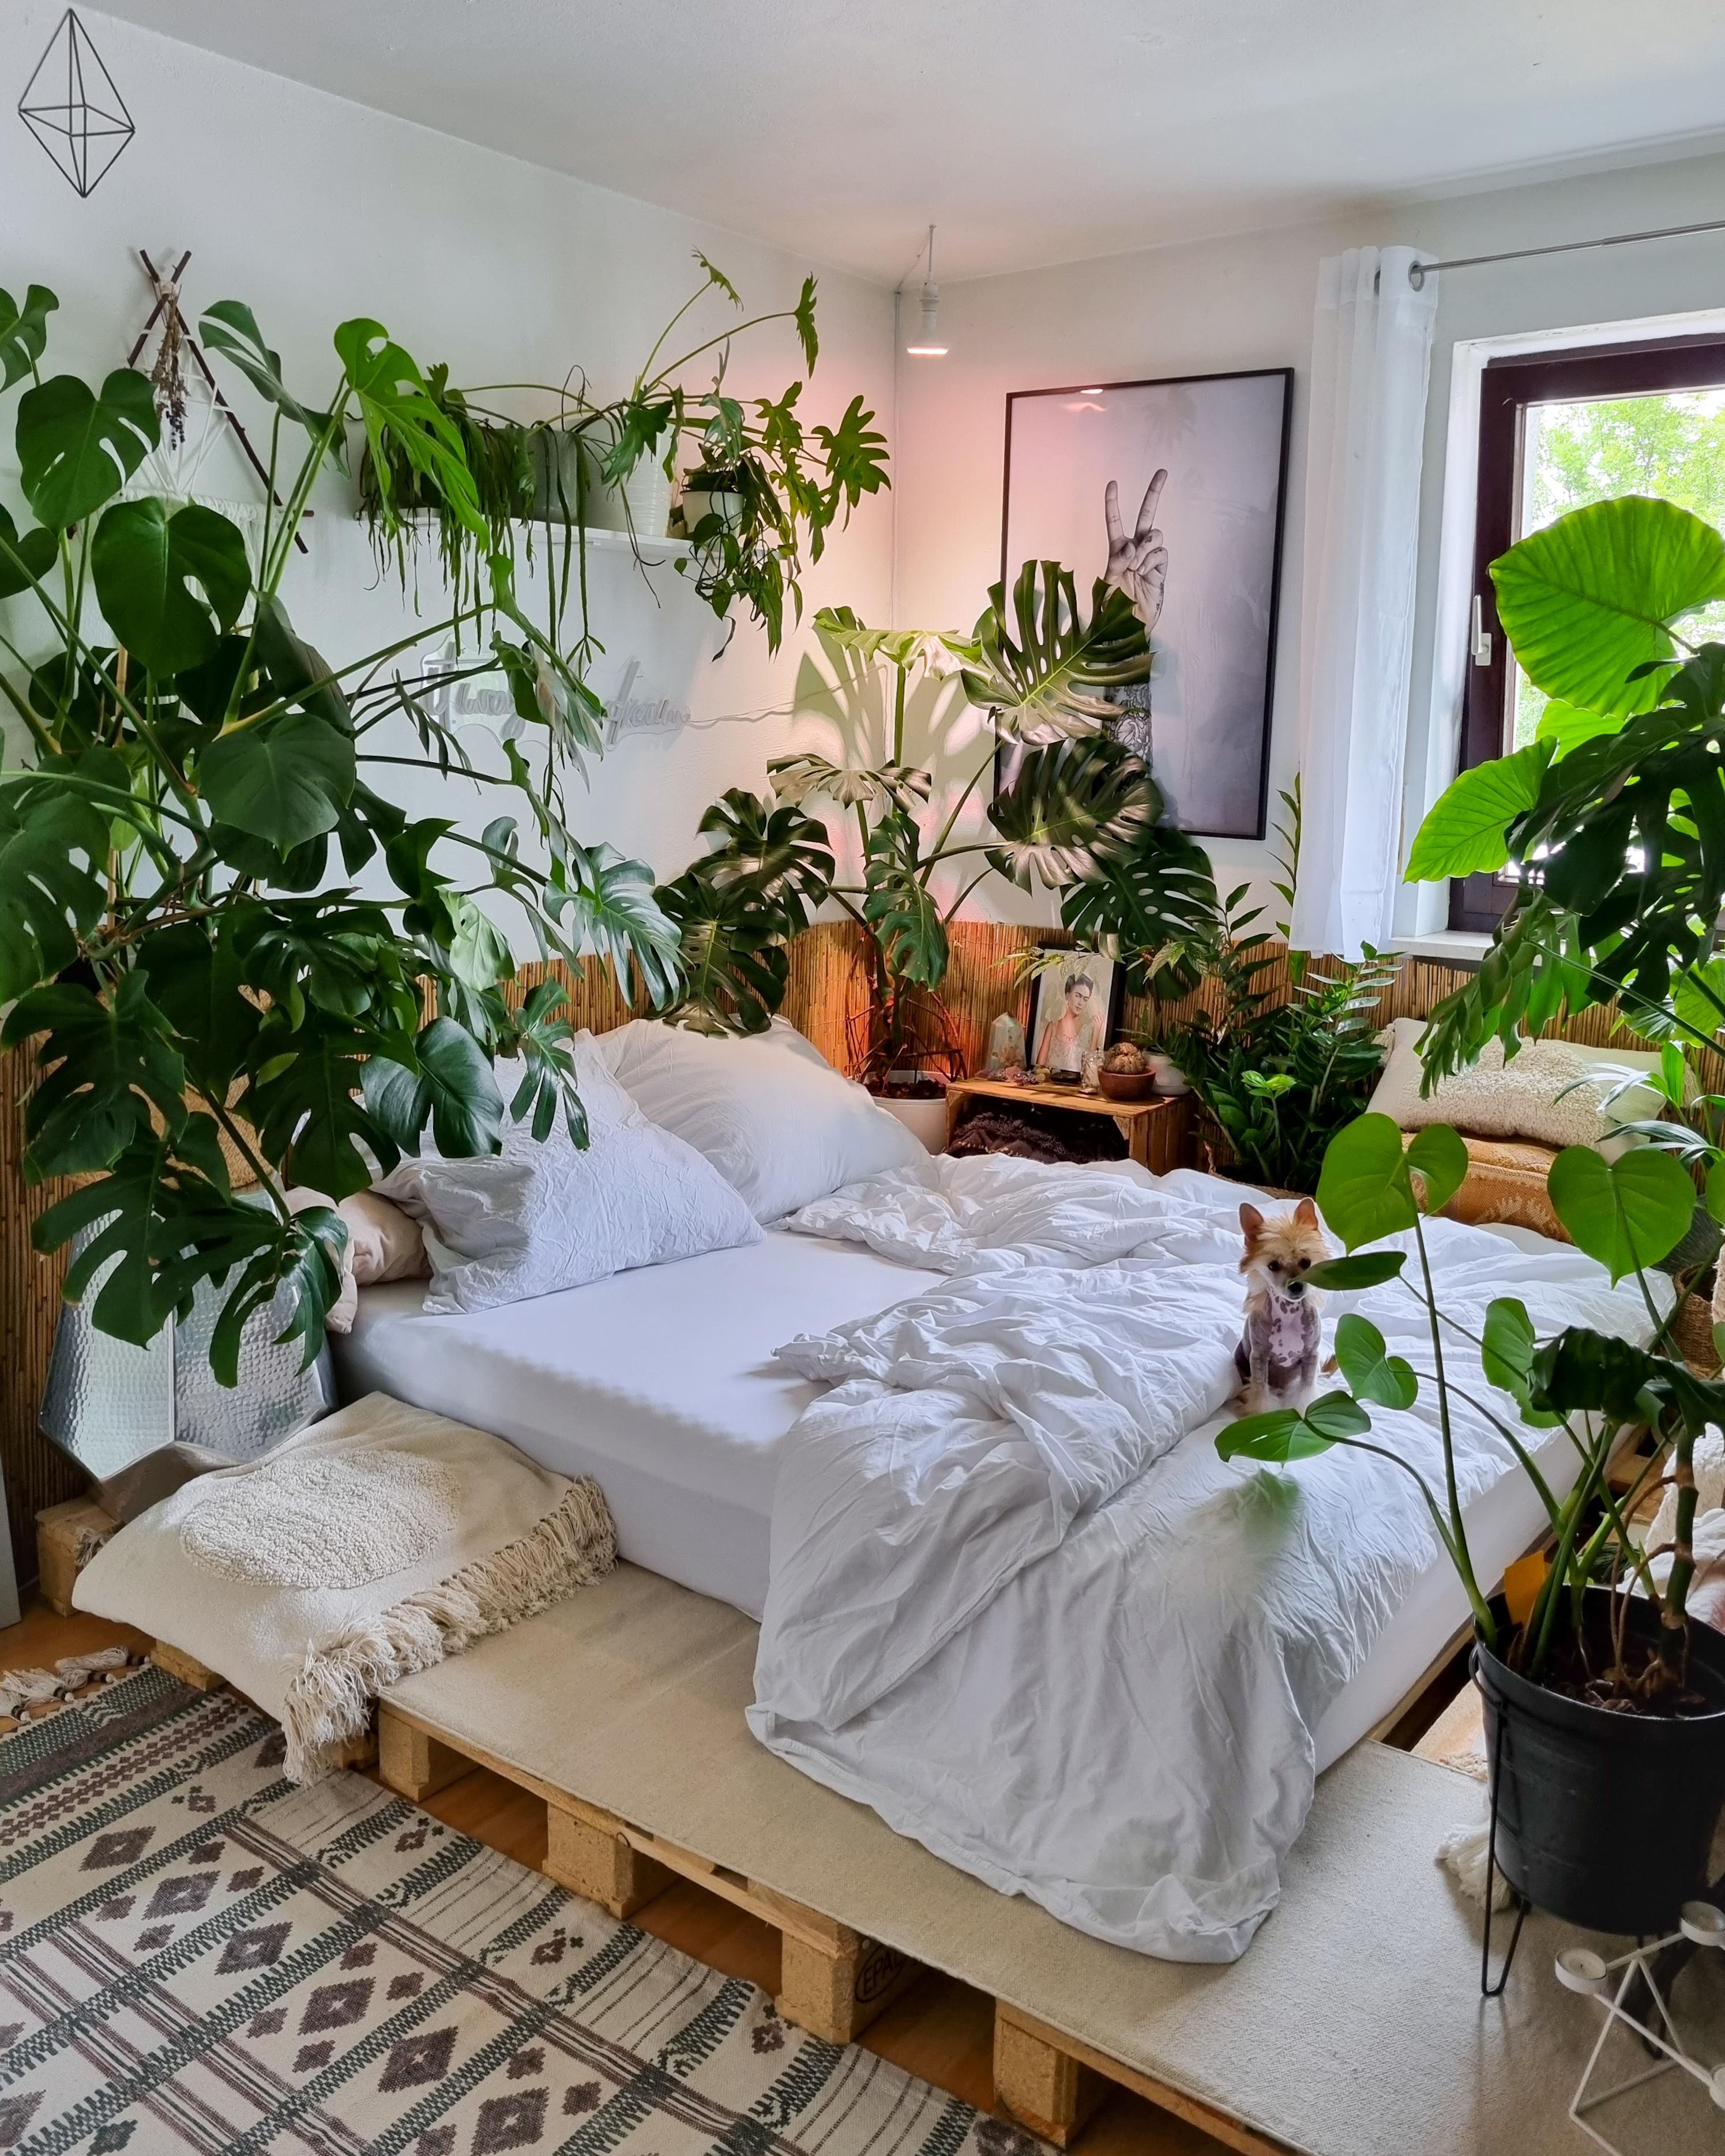 Sonntag 🪴✌🏼 #Schlafzimmer #Pflanzen #monstera #Bett #Paletten #palettenbett #urbanjungle #Kissen #Decke 